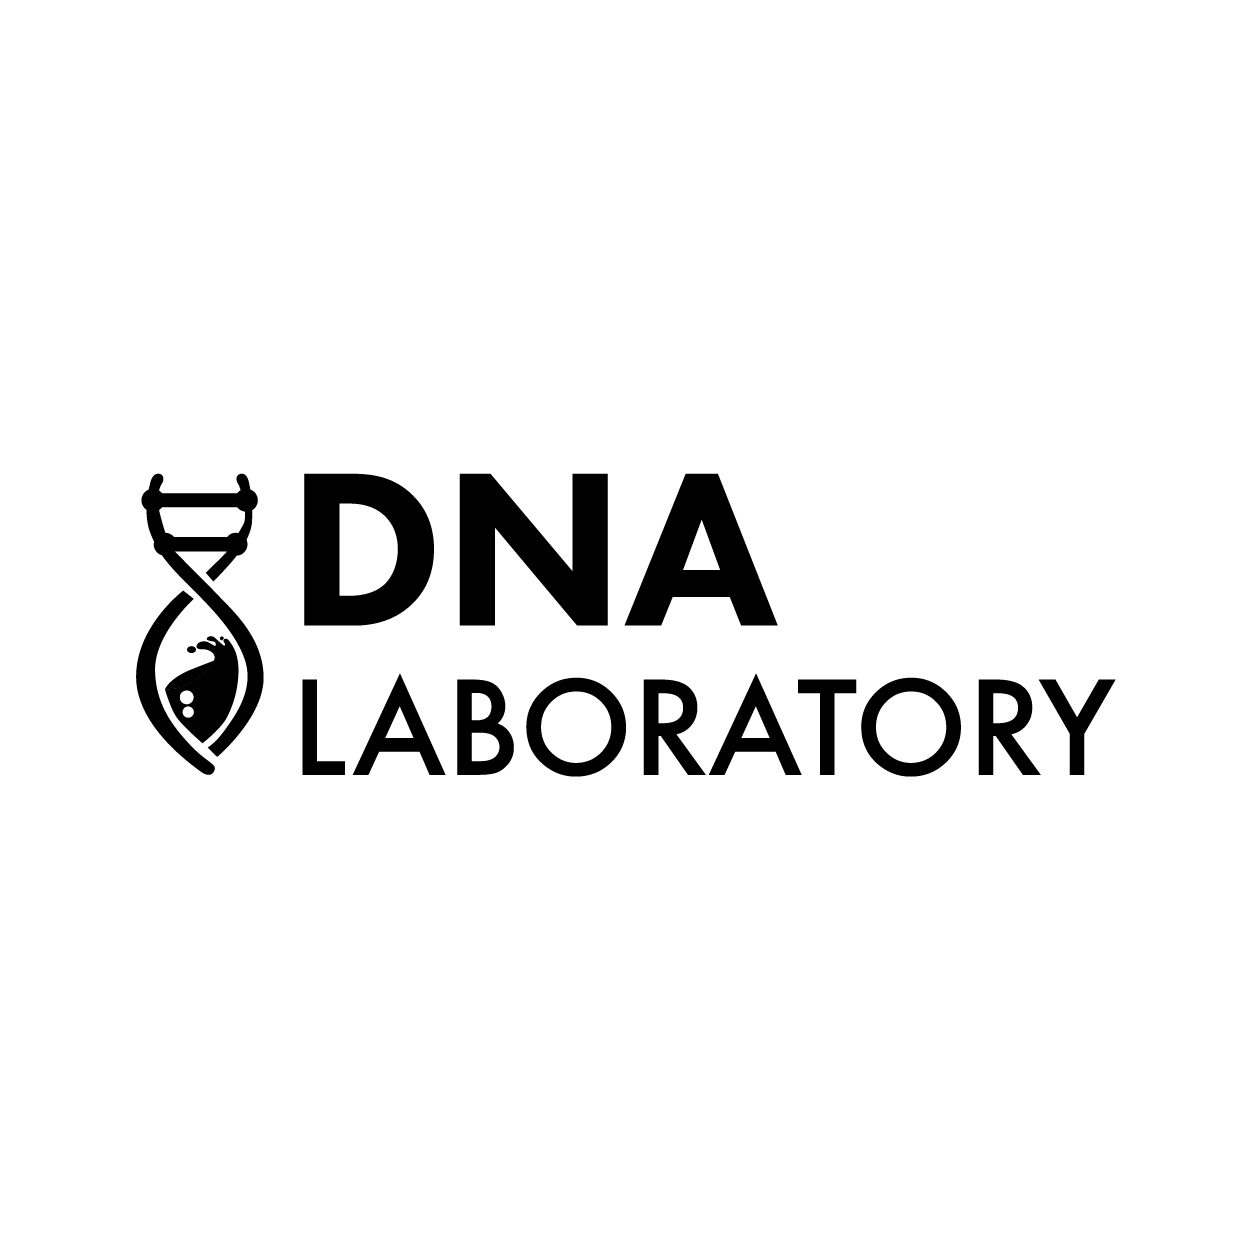 DNA LABORATORY